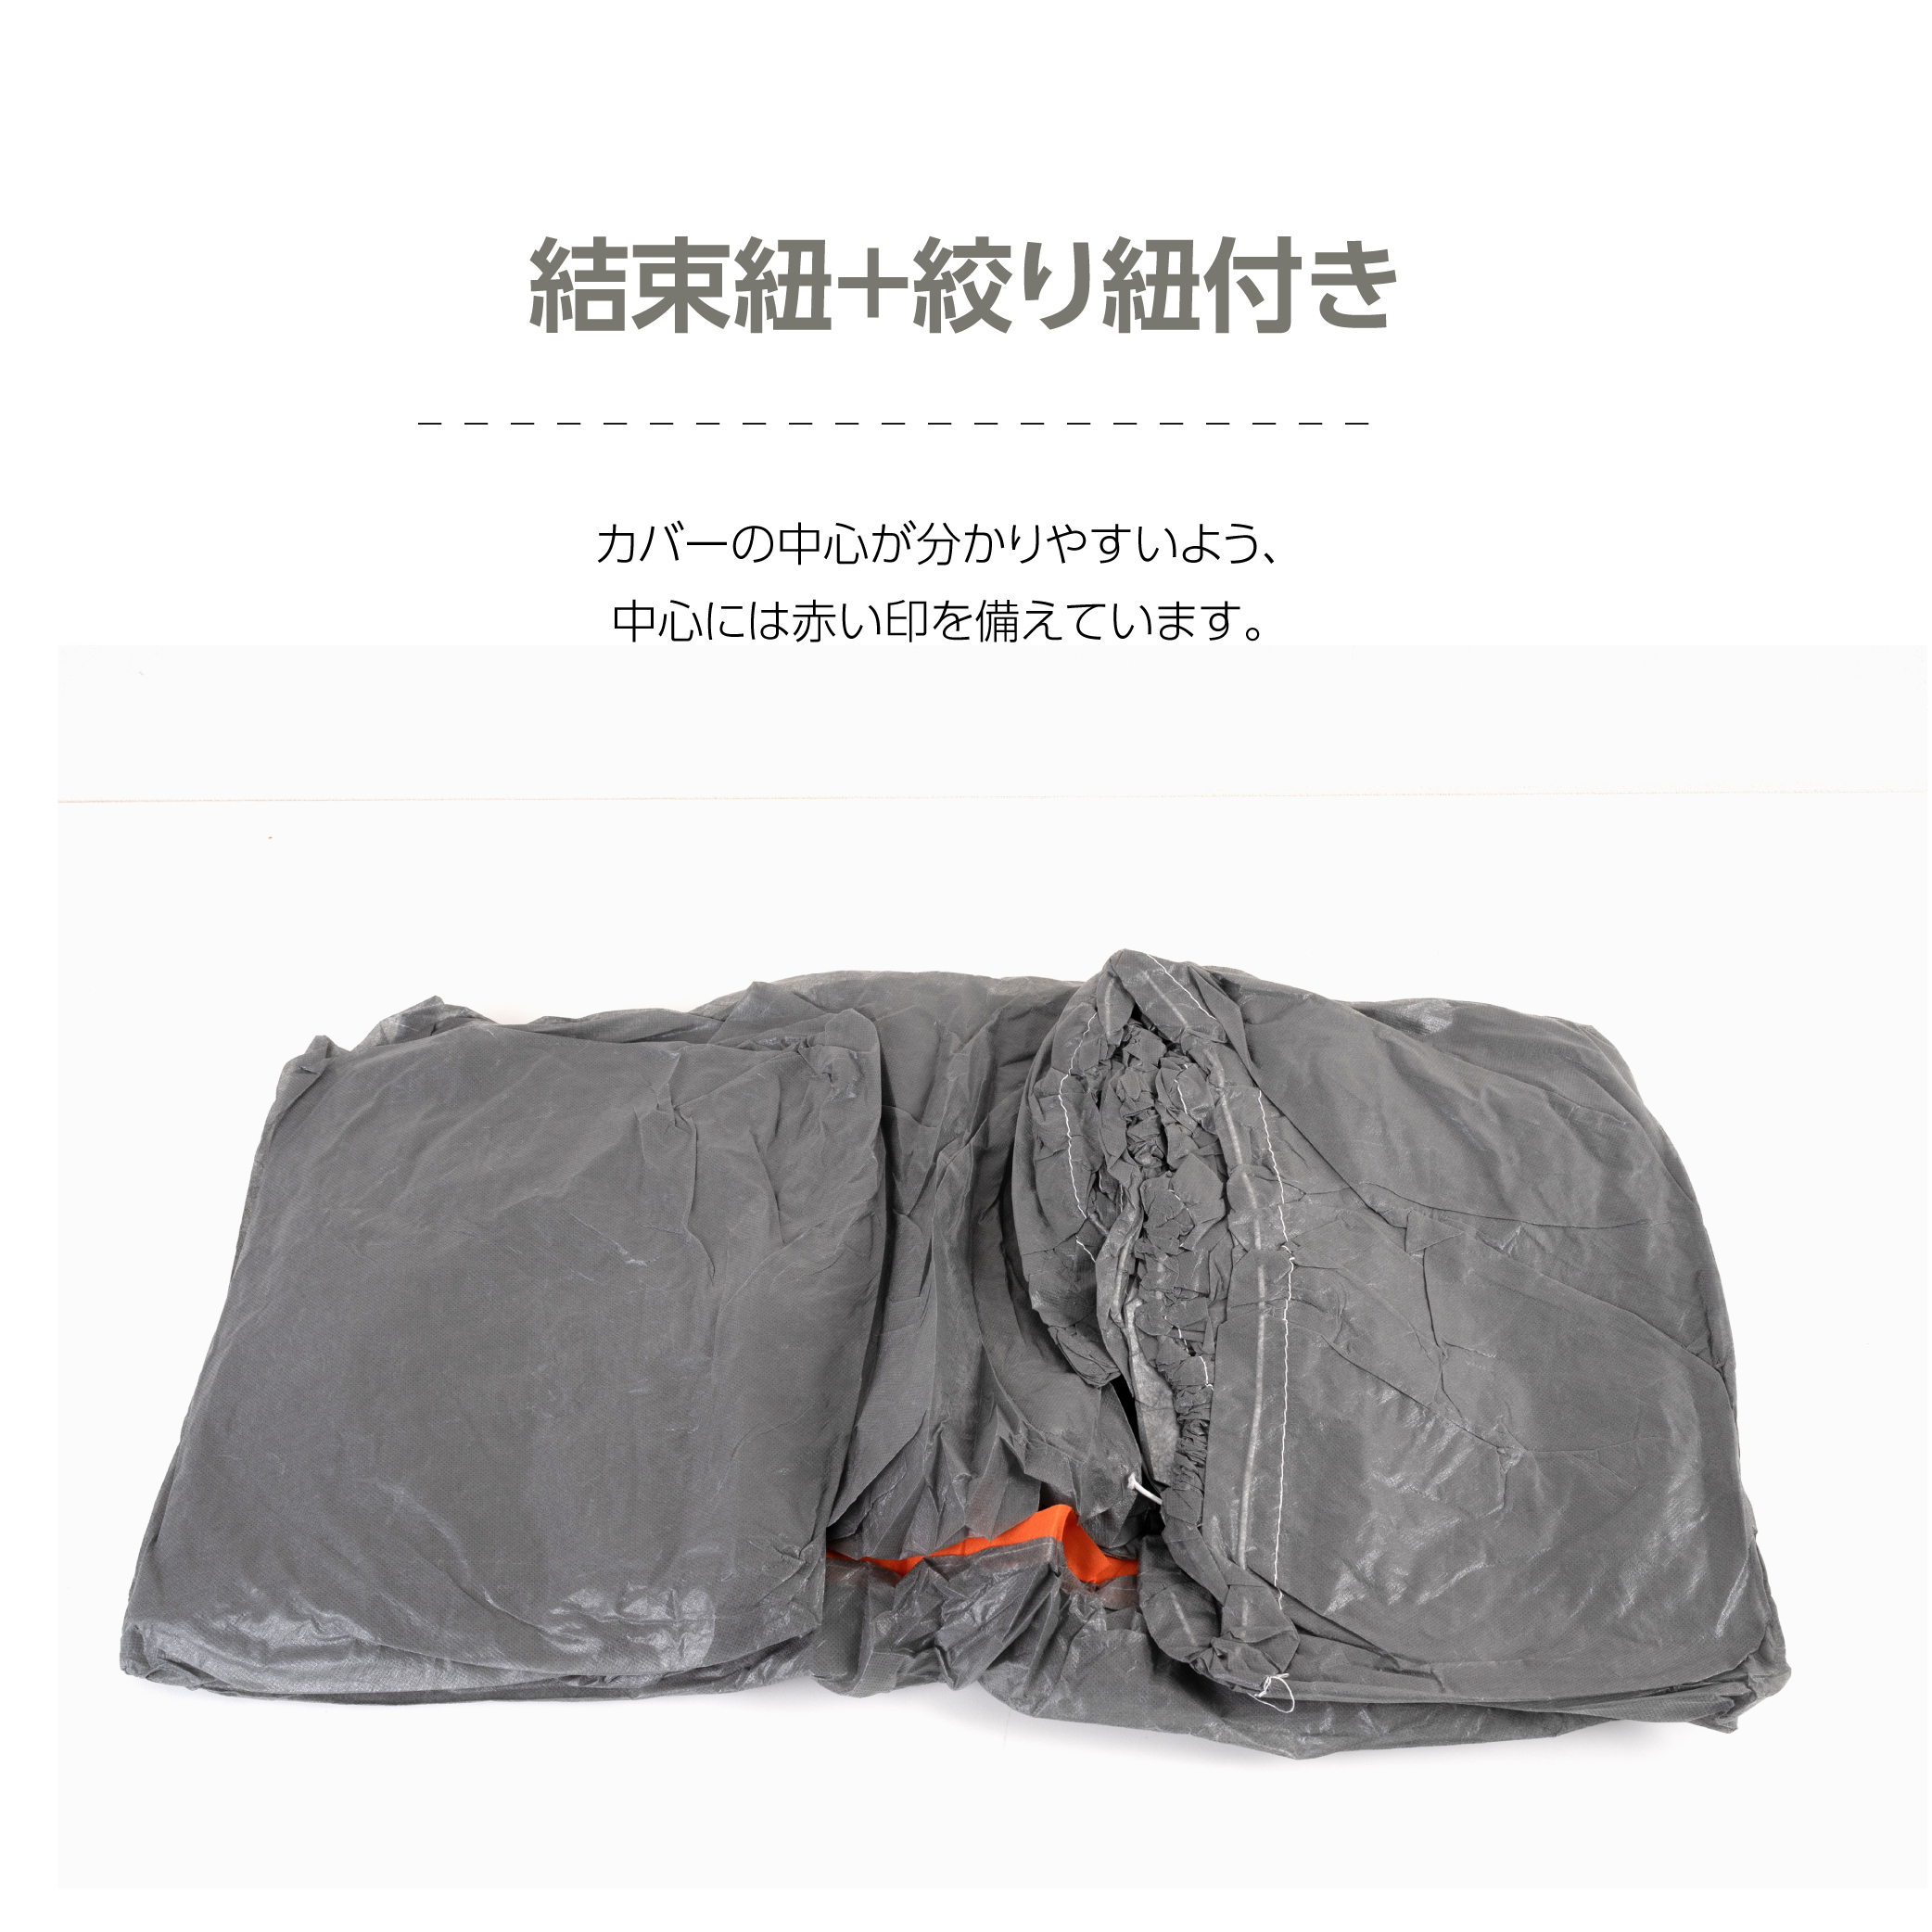 自動車養生カバー (LLサイズ: 4.8×7.8m) カバー 塗装やほこりから車を守る 表面防水加工不織布 結束紐＋絞り紐付き jyk-ll4878